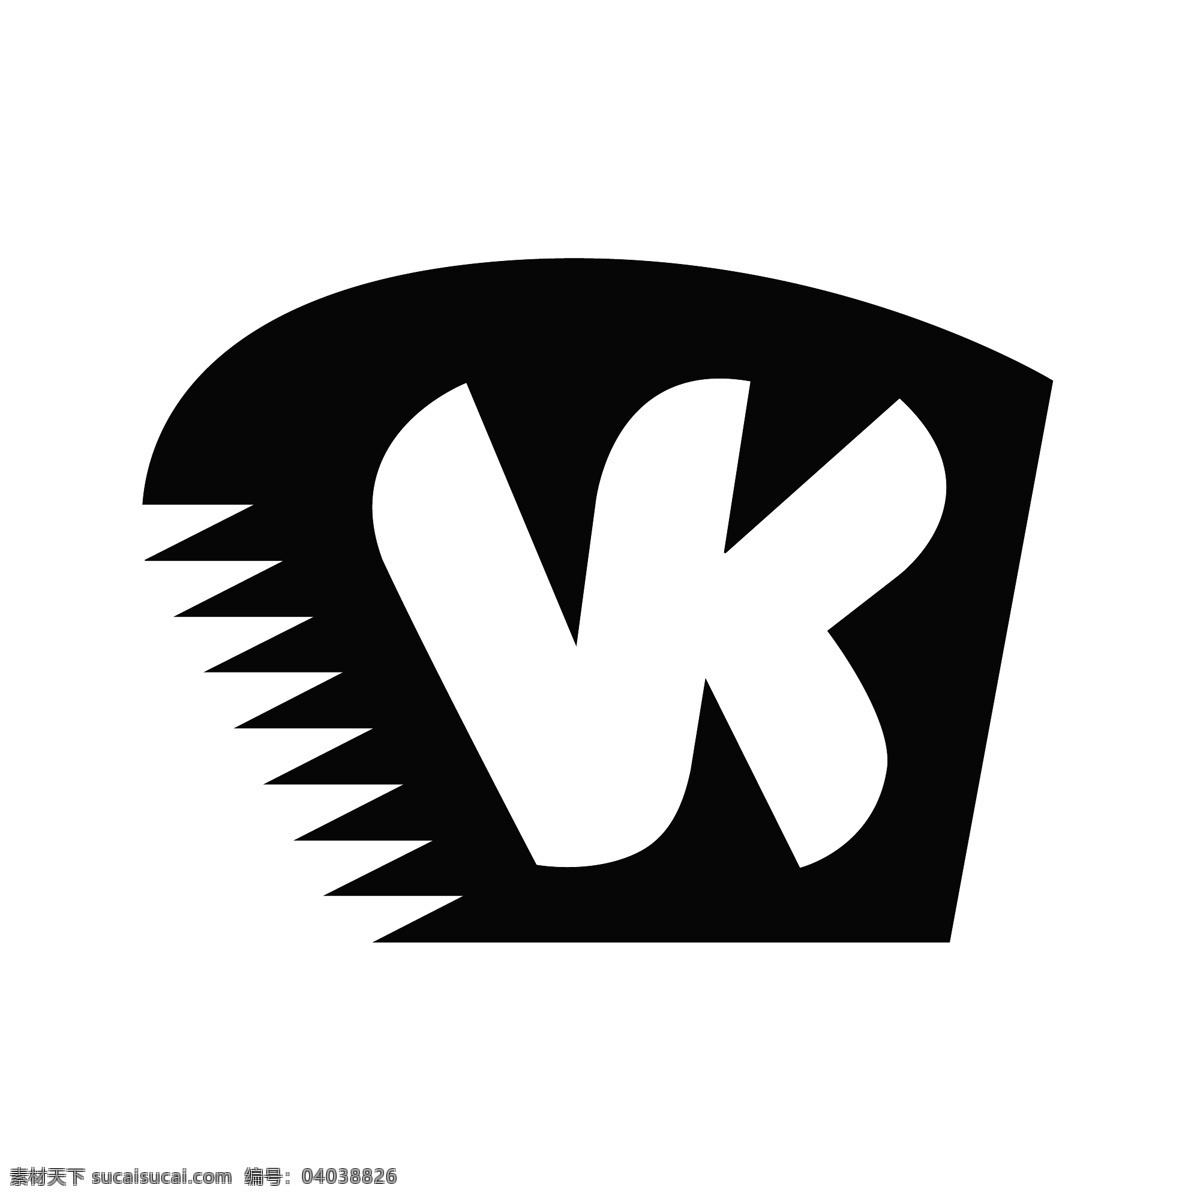 vk 矢量标志下载 免费矢量标识 商标 品牌标识 标识 矢量 免费 品牌 公司 白色